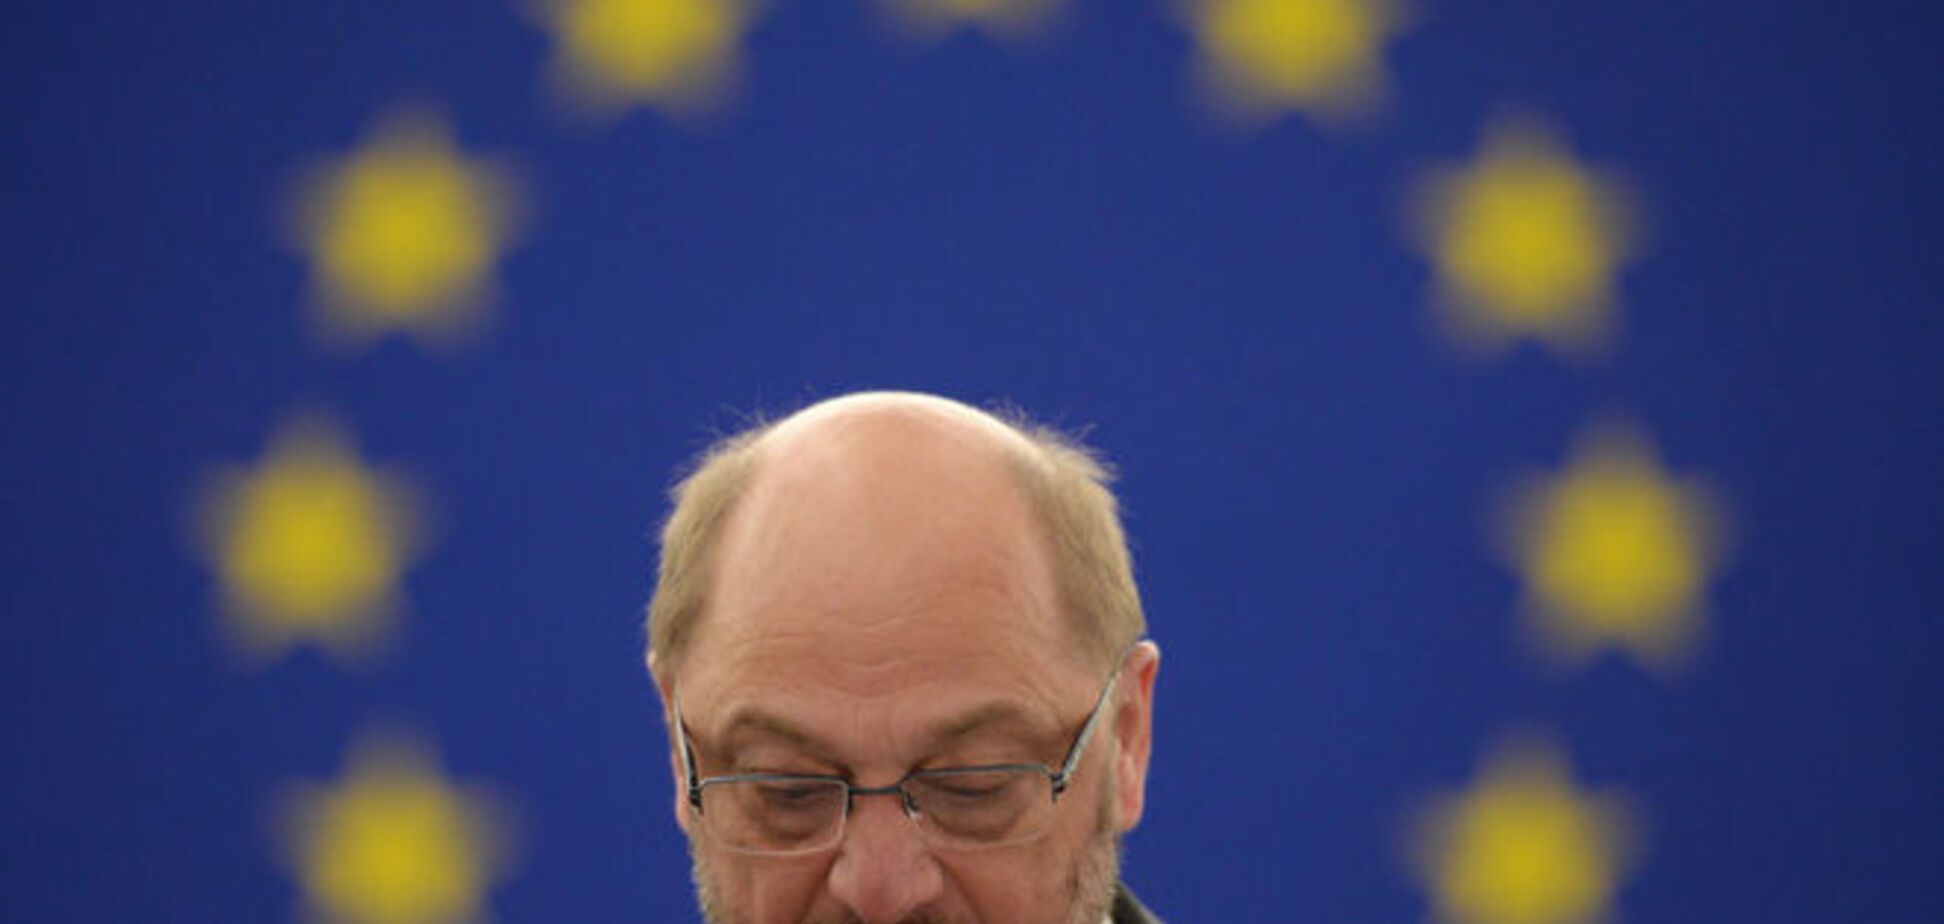 Єврозона може розвалитися на частини - голаова Європарламенту